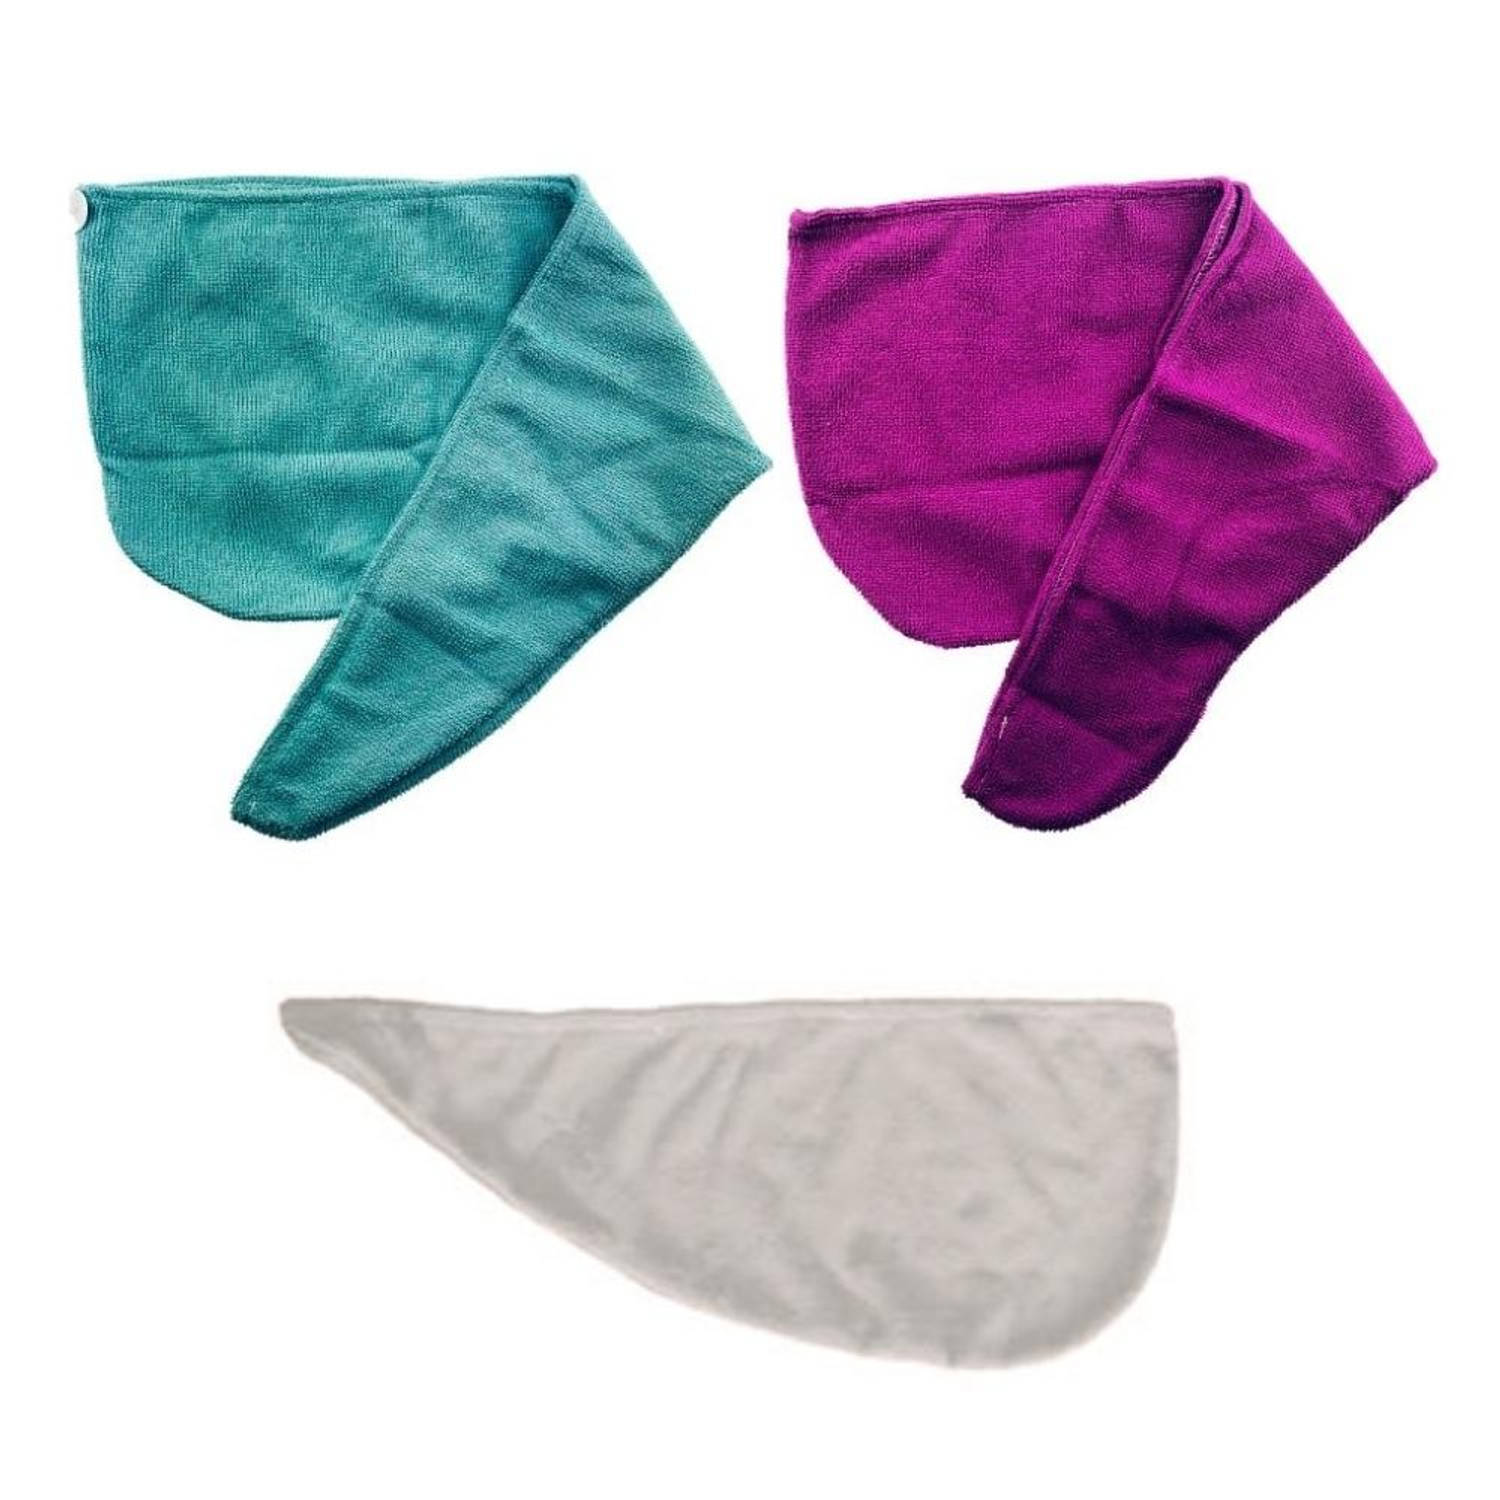 Haar Handdoek - 3 Stuks - Microvezel - Wit - Blauw - Roze